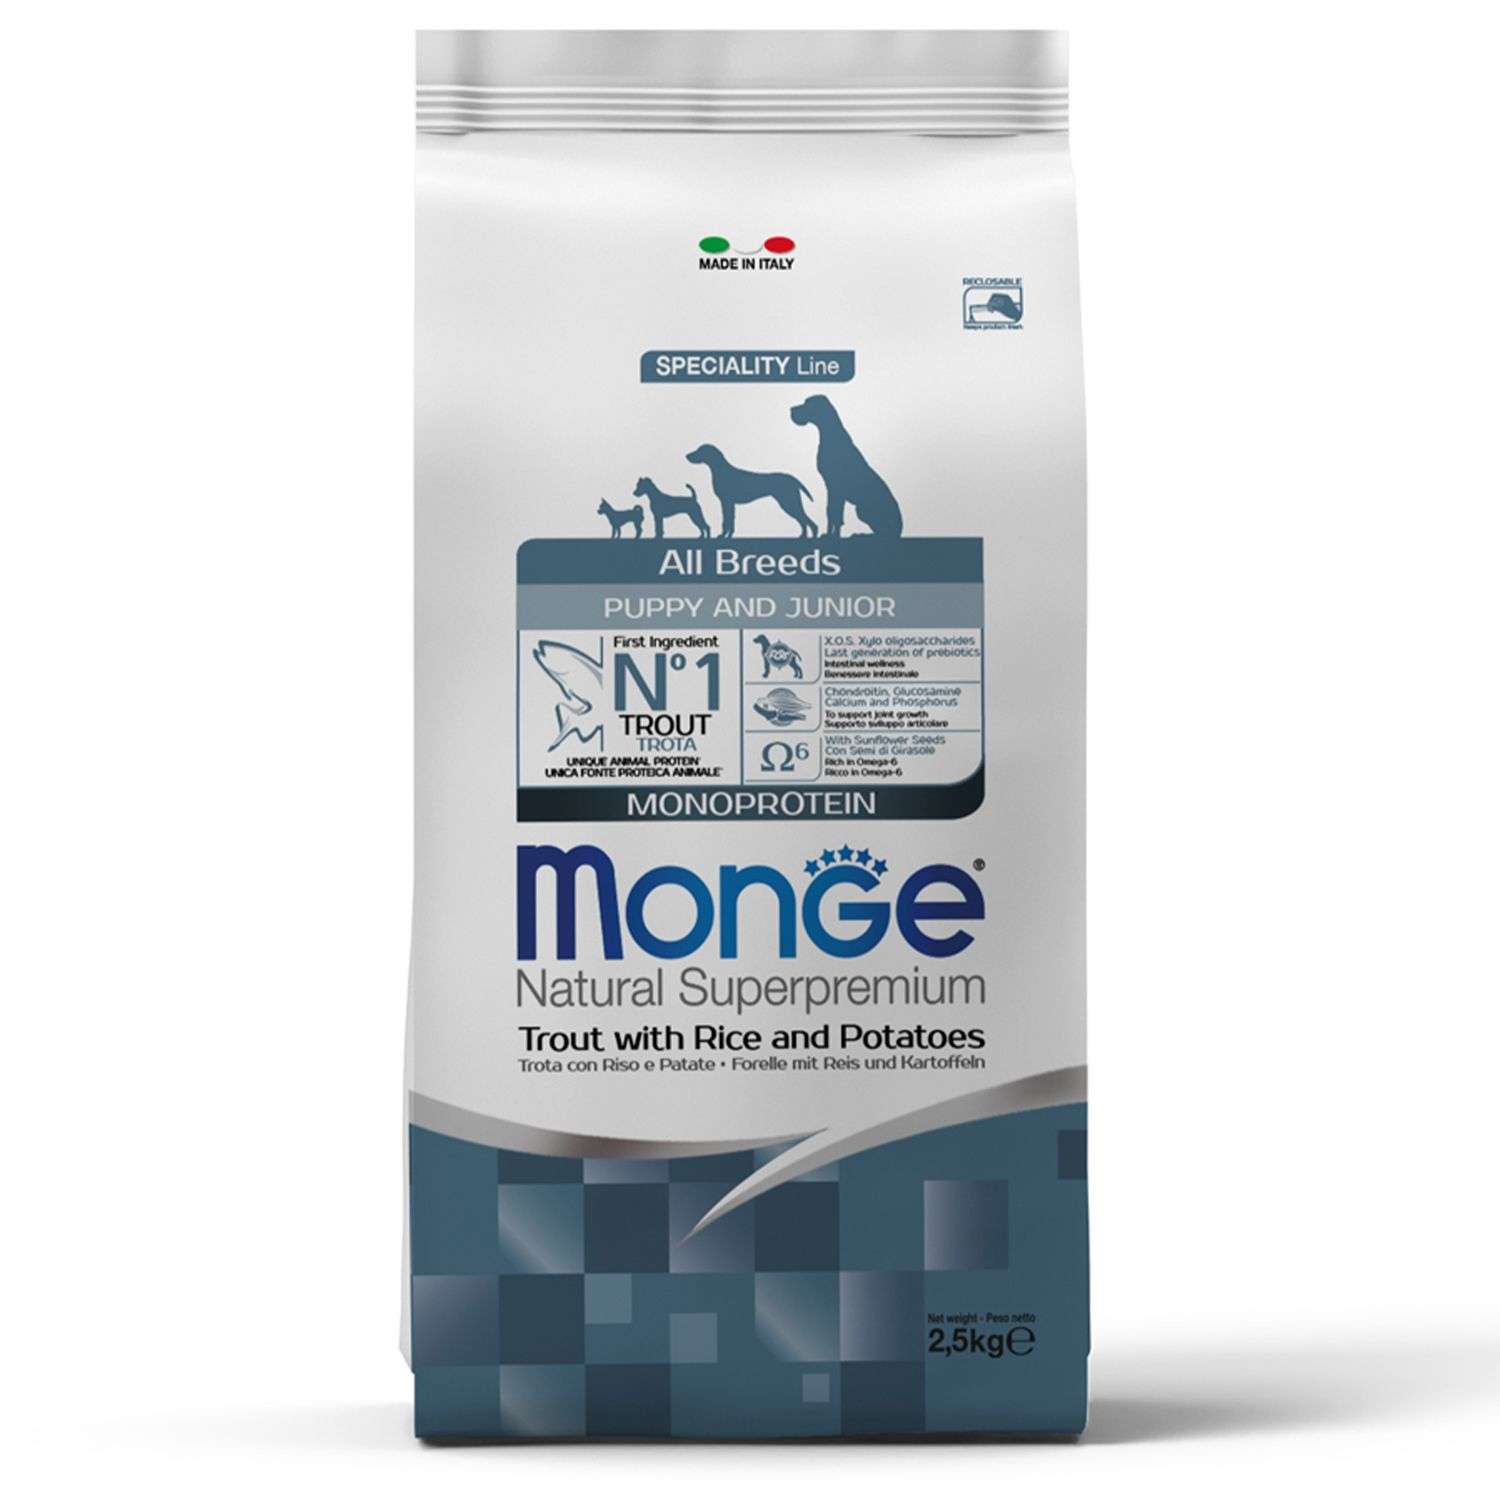 Корм для щенков MONGE 2.5кг Dog Speciality Line Monoprotein всех пород форель-рис-картофель - фото 1